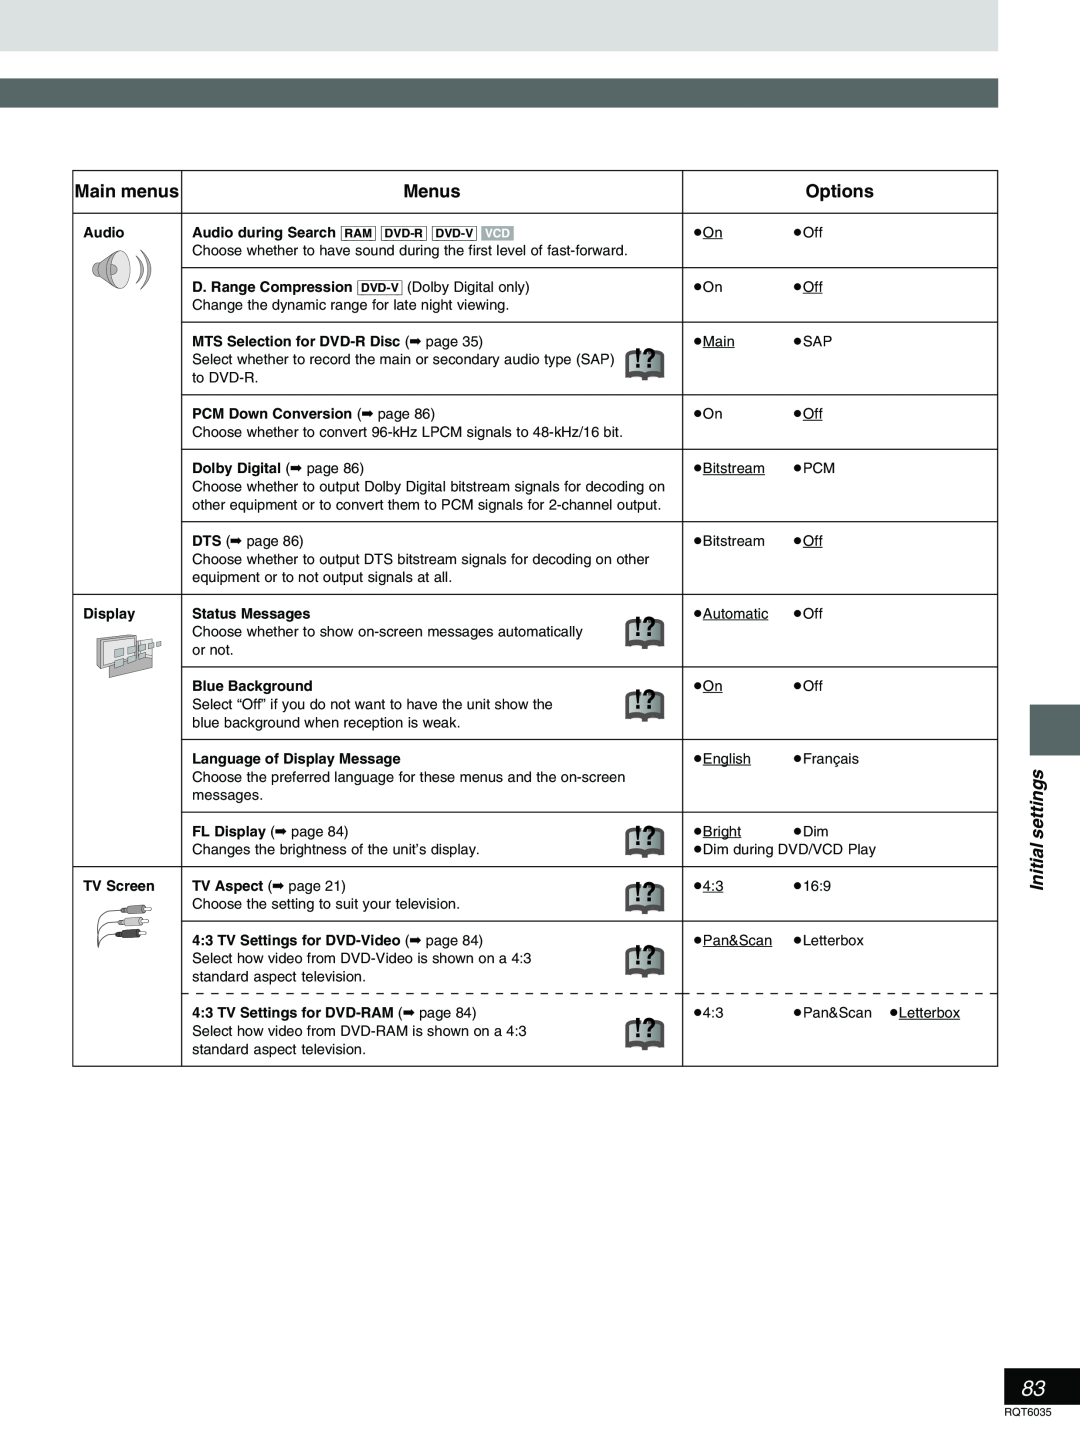 Panasonic DMR-E20 warranty Main menus, Menus, Options, Initial settings, Audio 